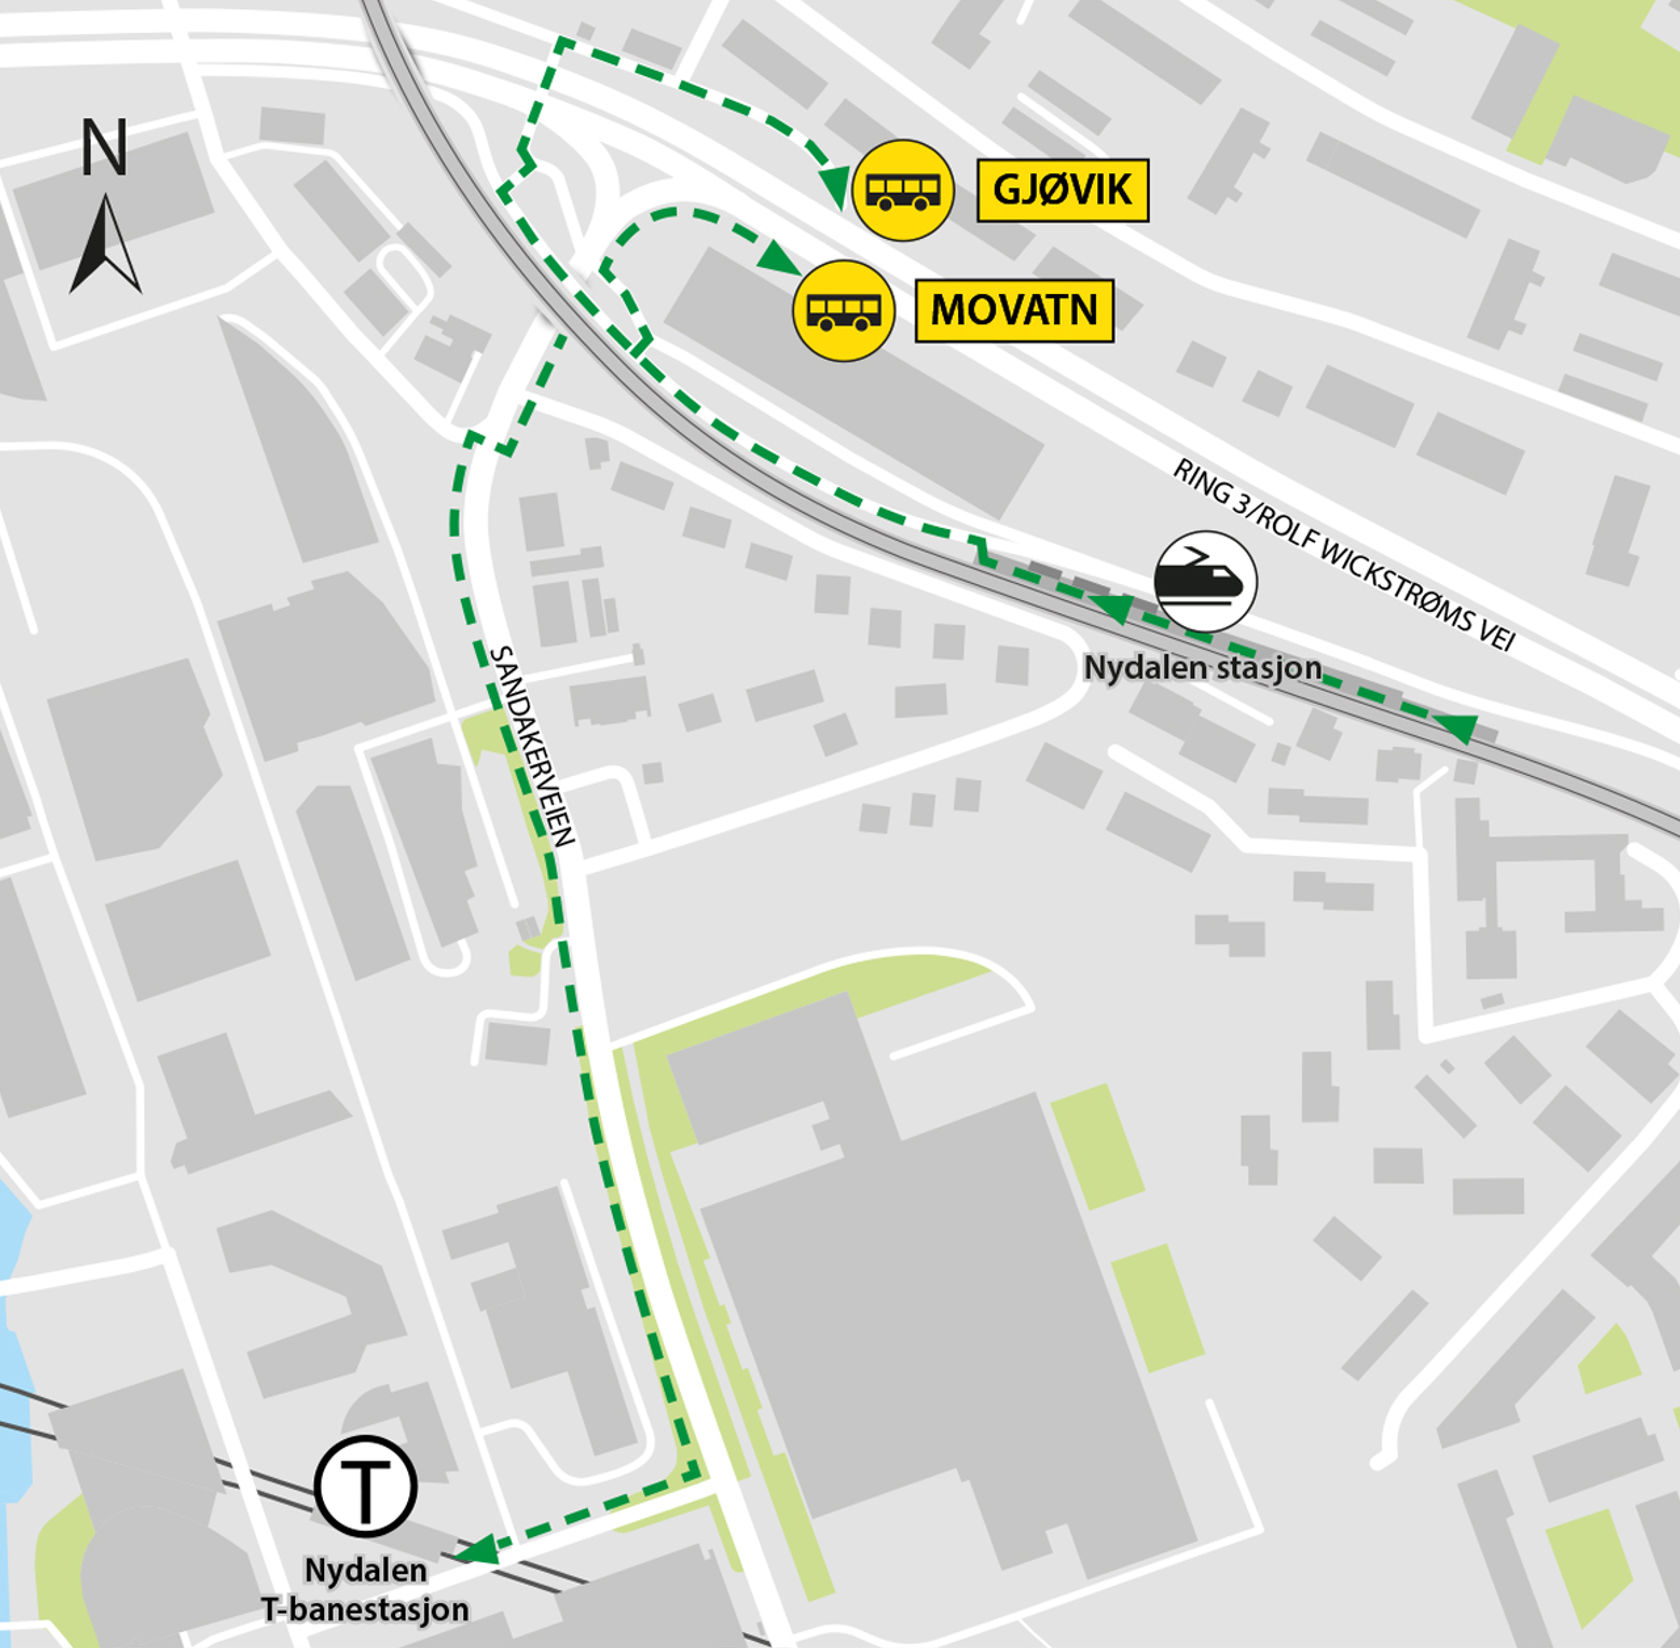 Kartet viser at bussene kjører fra bussholdeplassene Nydalen stasjon i Rolf Wickstrøms vei